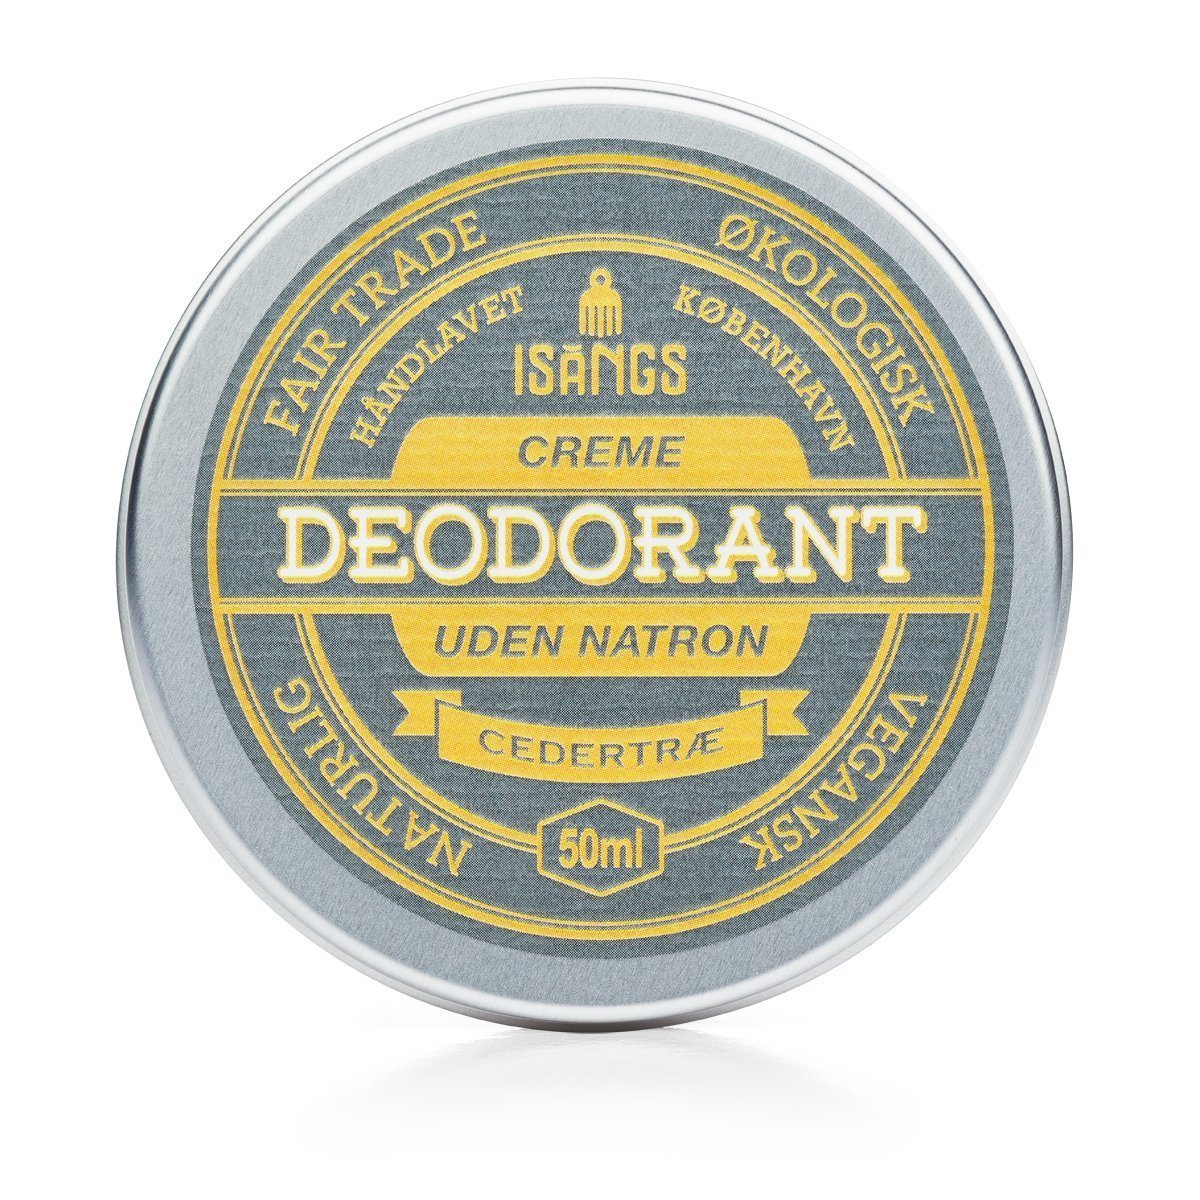 Isangs Cream Deodorant utan Soda - Cedar Isangs 